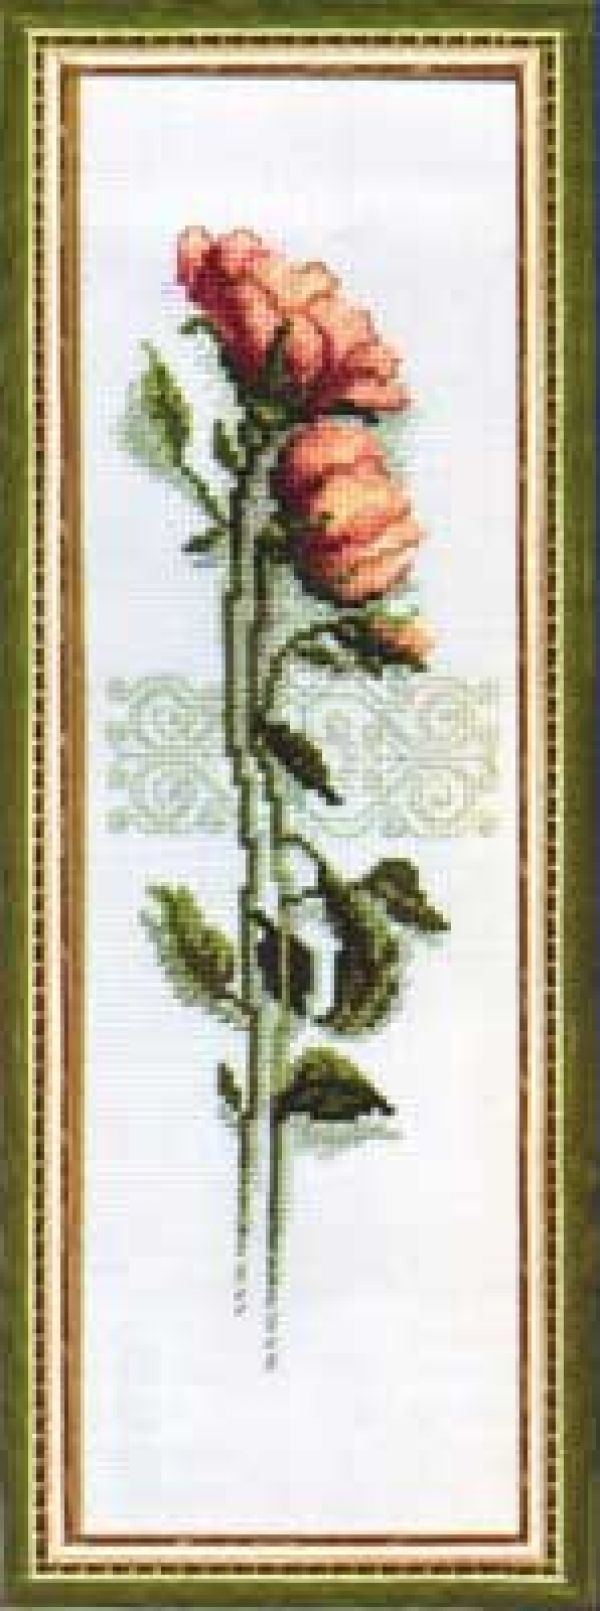 схема вышивки крестом роза от чаривной мыти - диптих